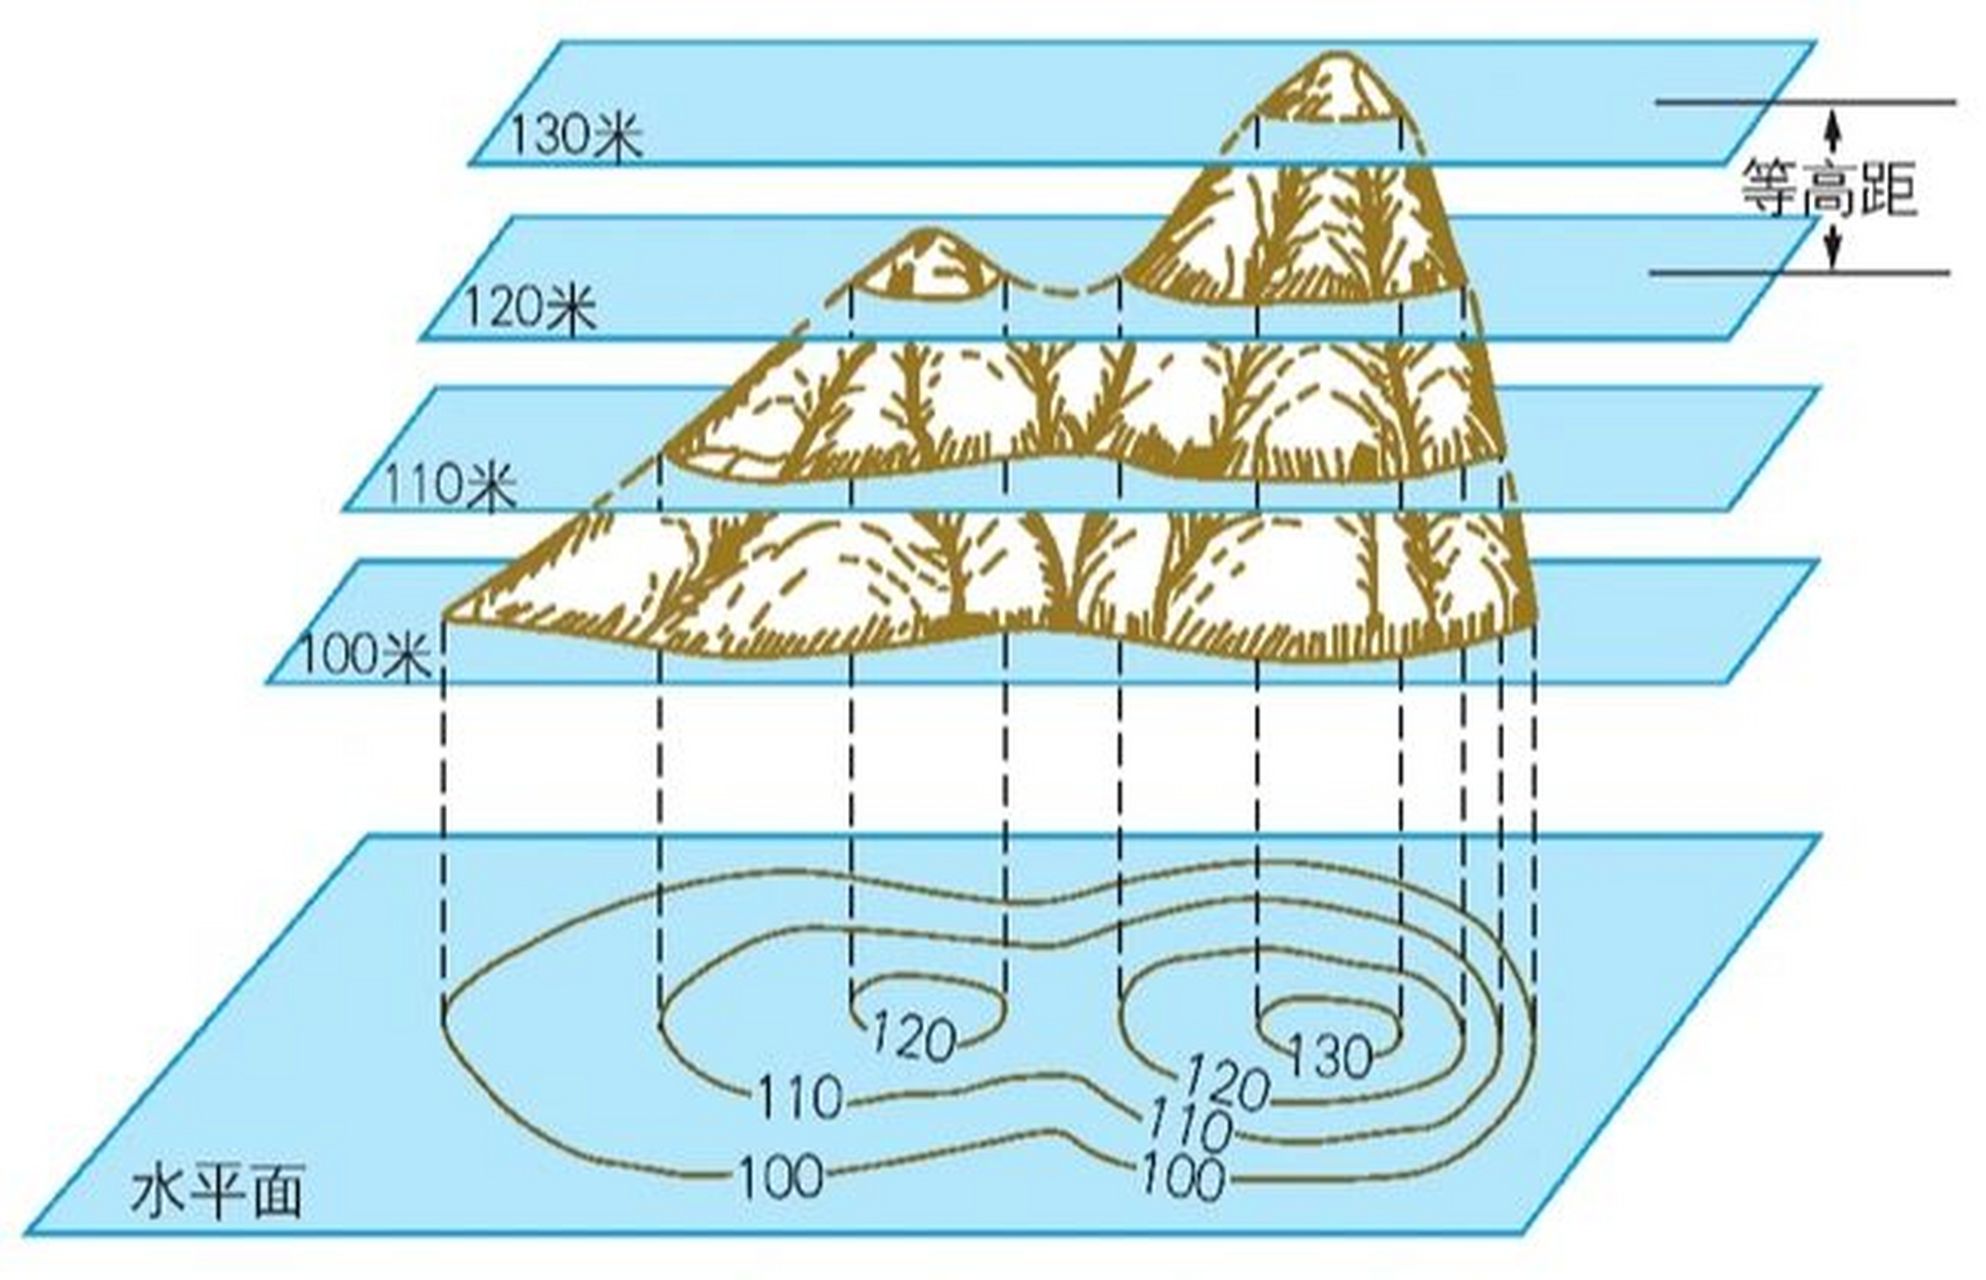 等高线地形图 (1)地形图:用来表示地球表面高山,低地等地表的高低起伏